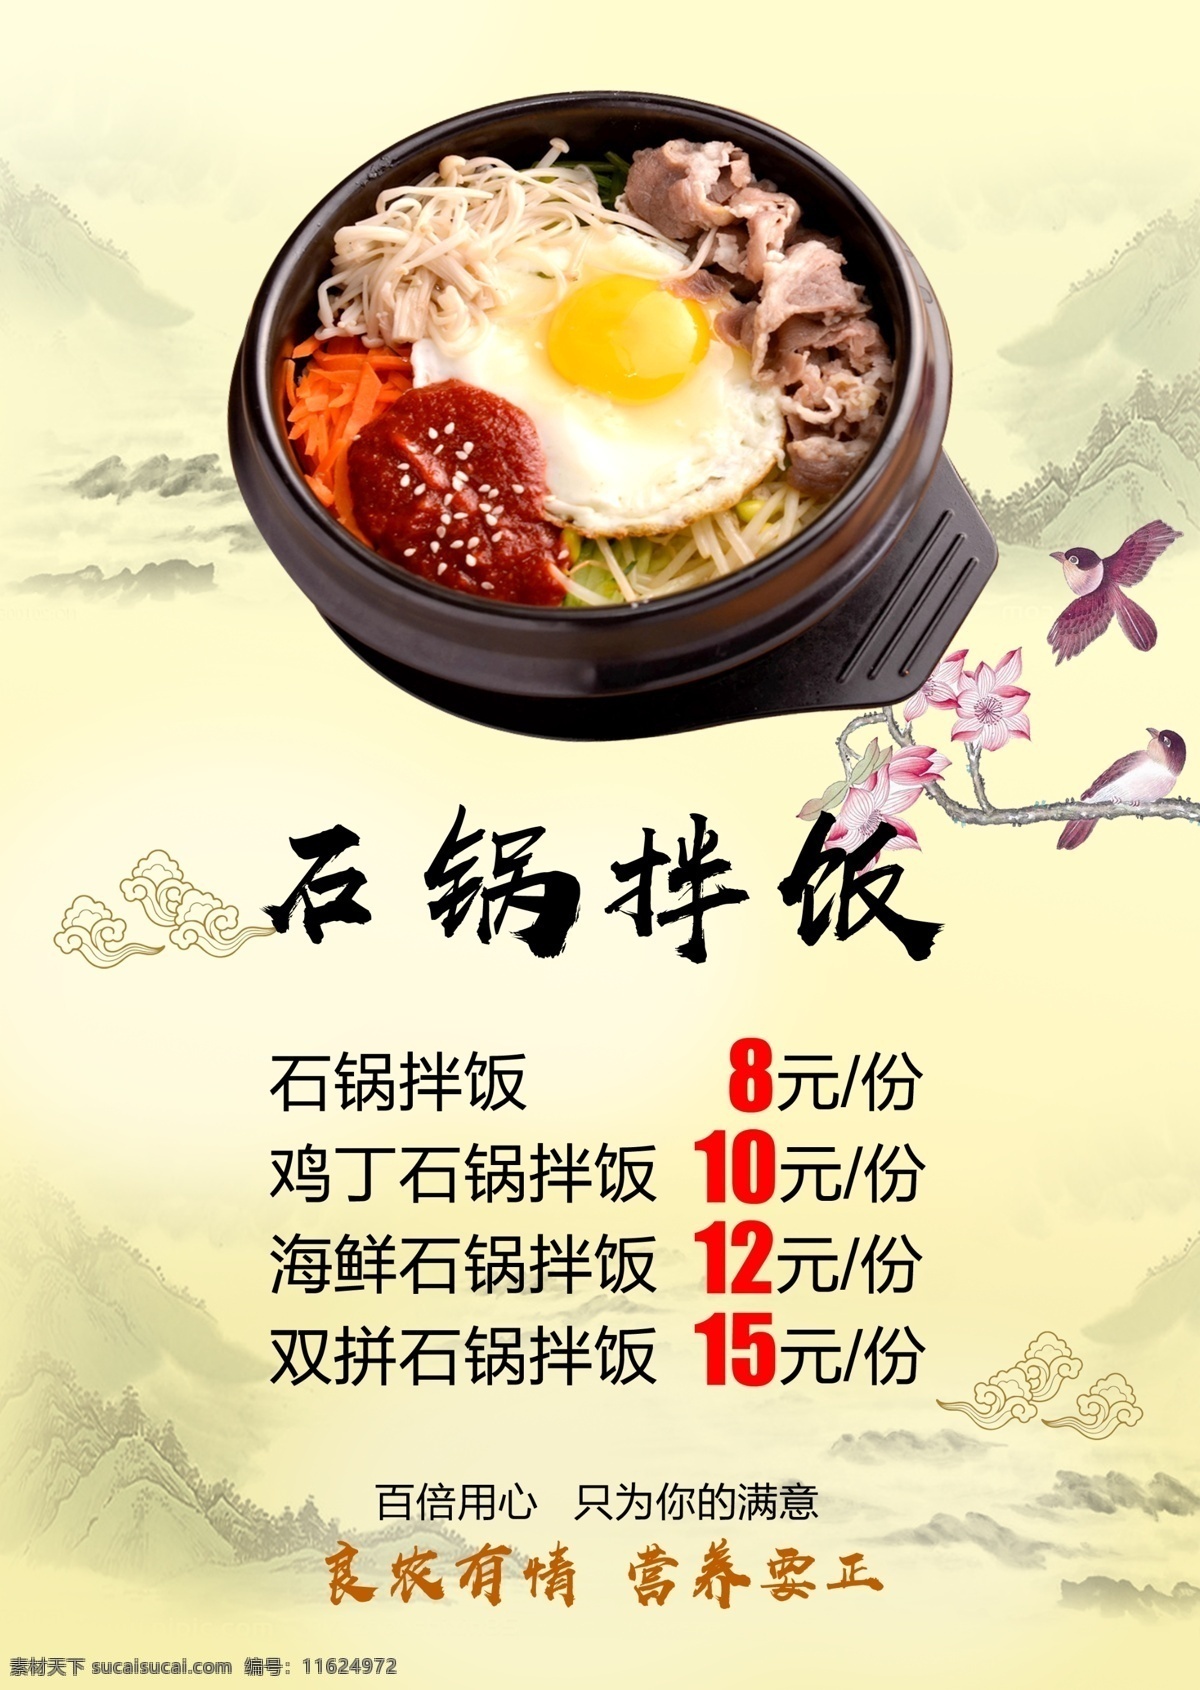 餐饮美食 广告牌 石锅拌饭广告 餐桌美食 中国风传统 米色背景 文字版式排版